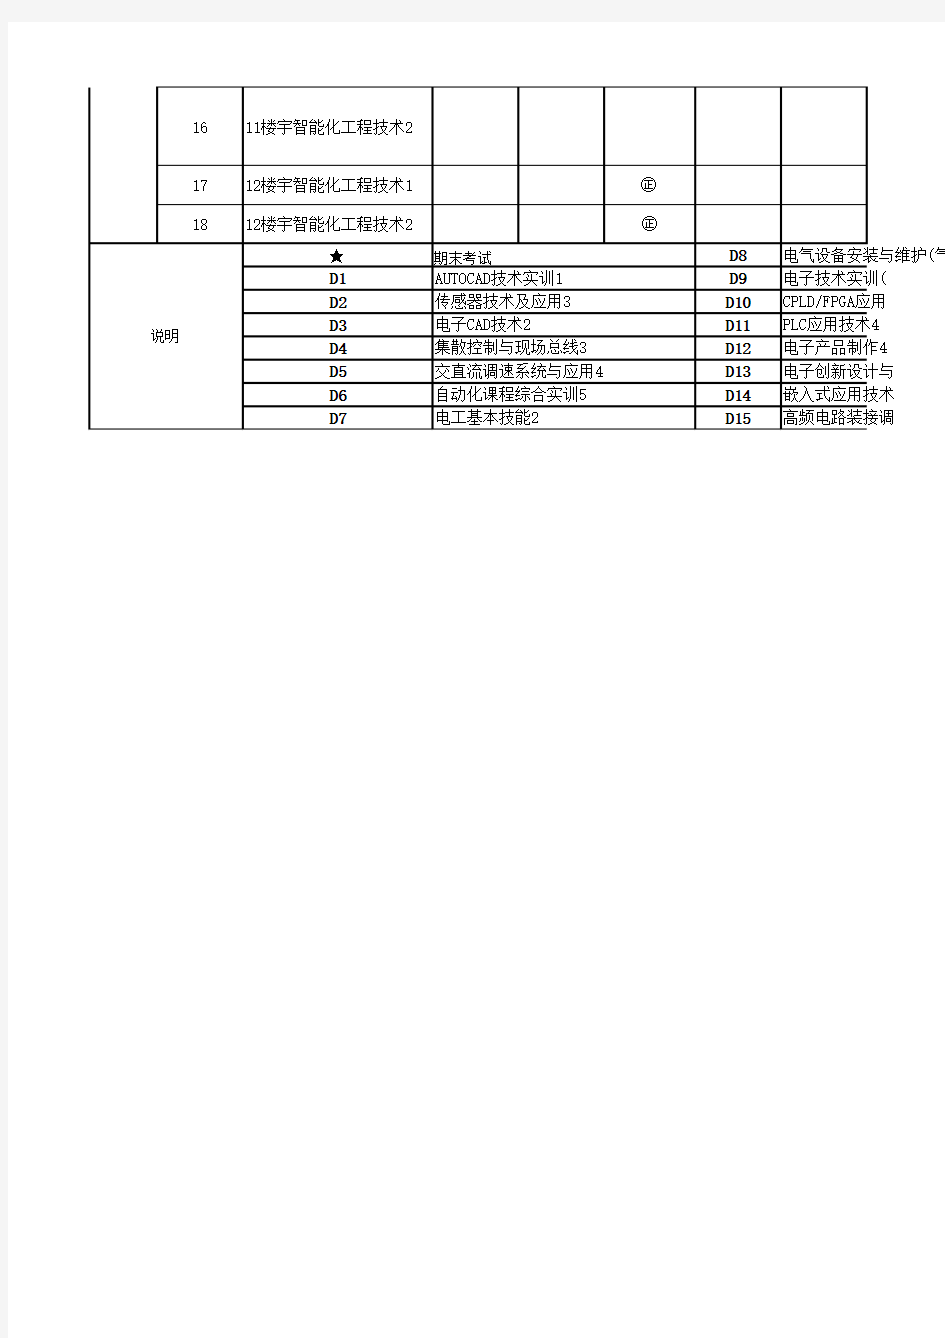 电气分院 2012-2013-1学期实训教学工作进程表(定稿)